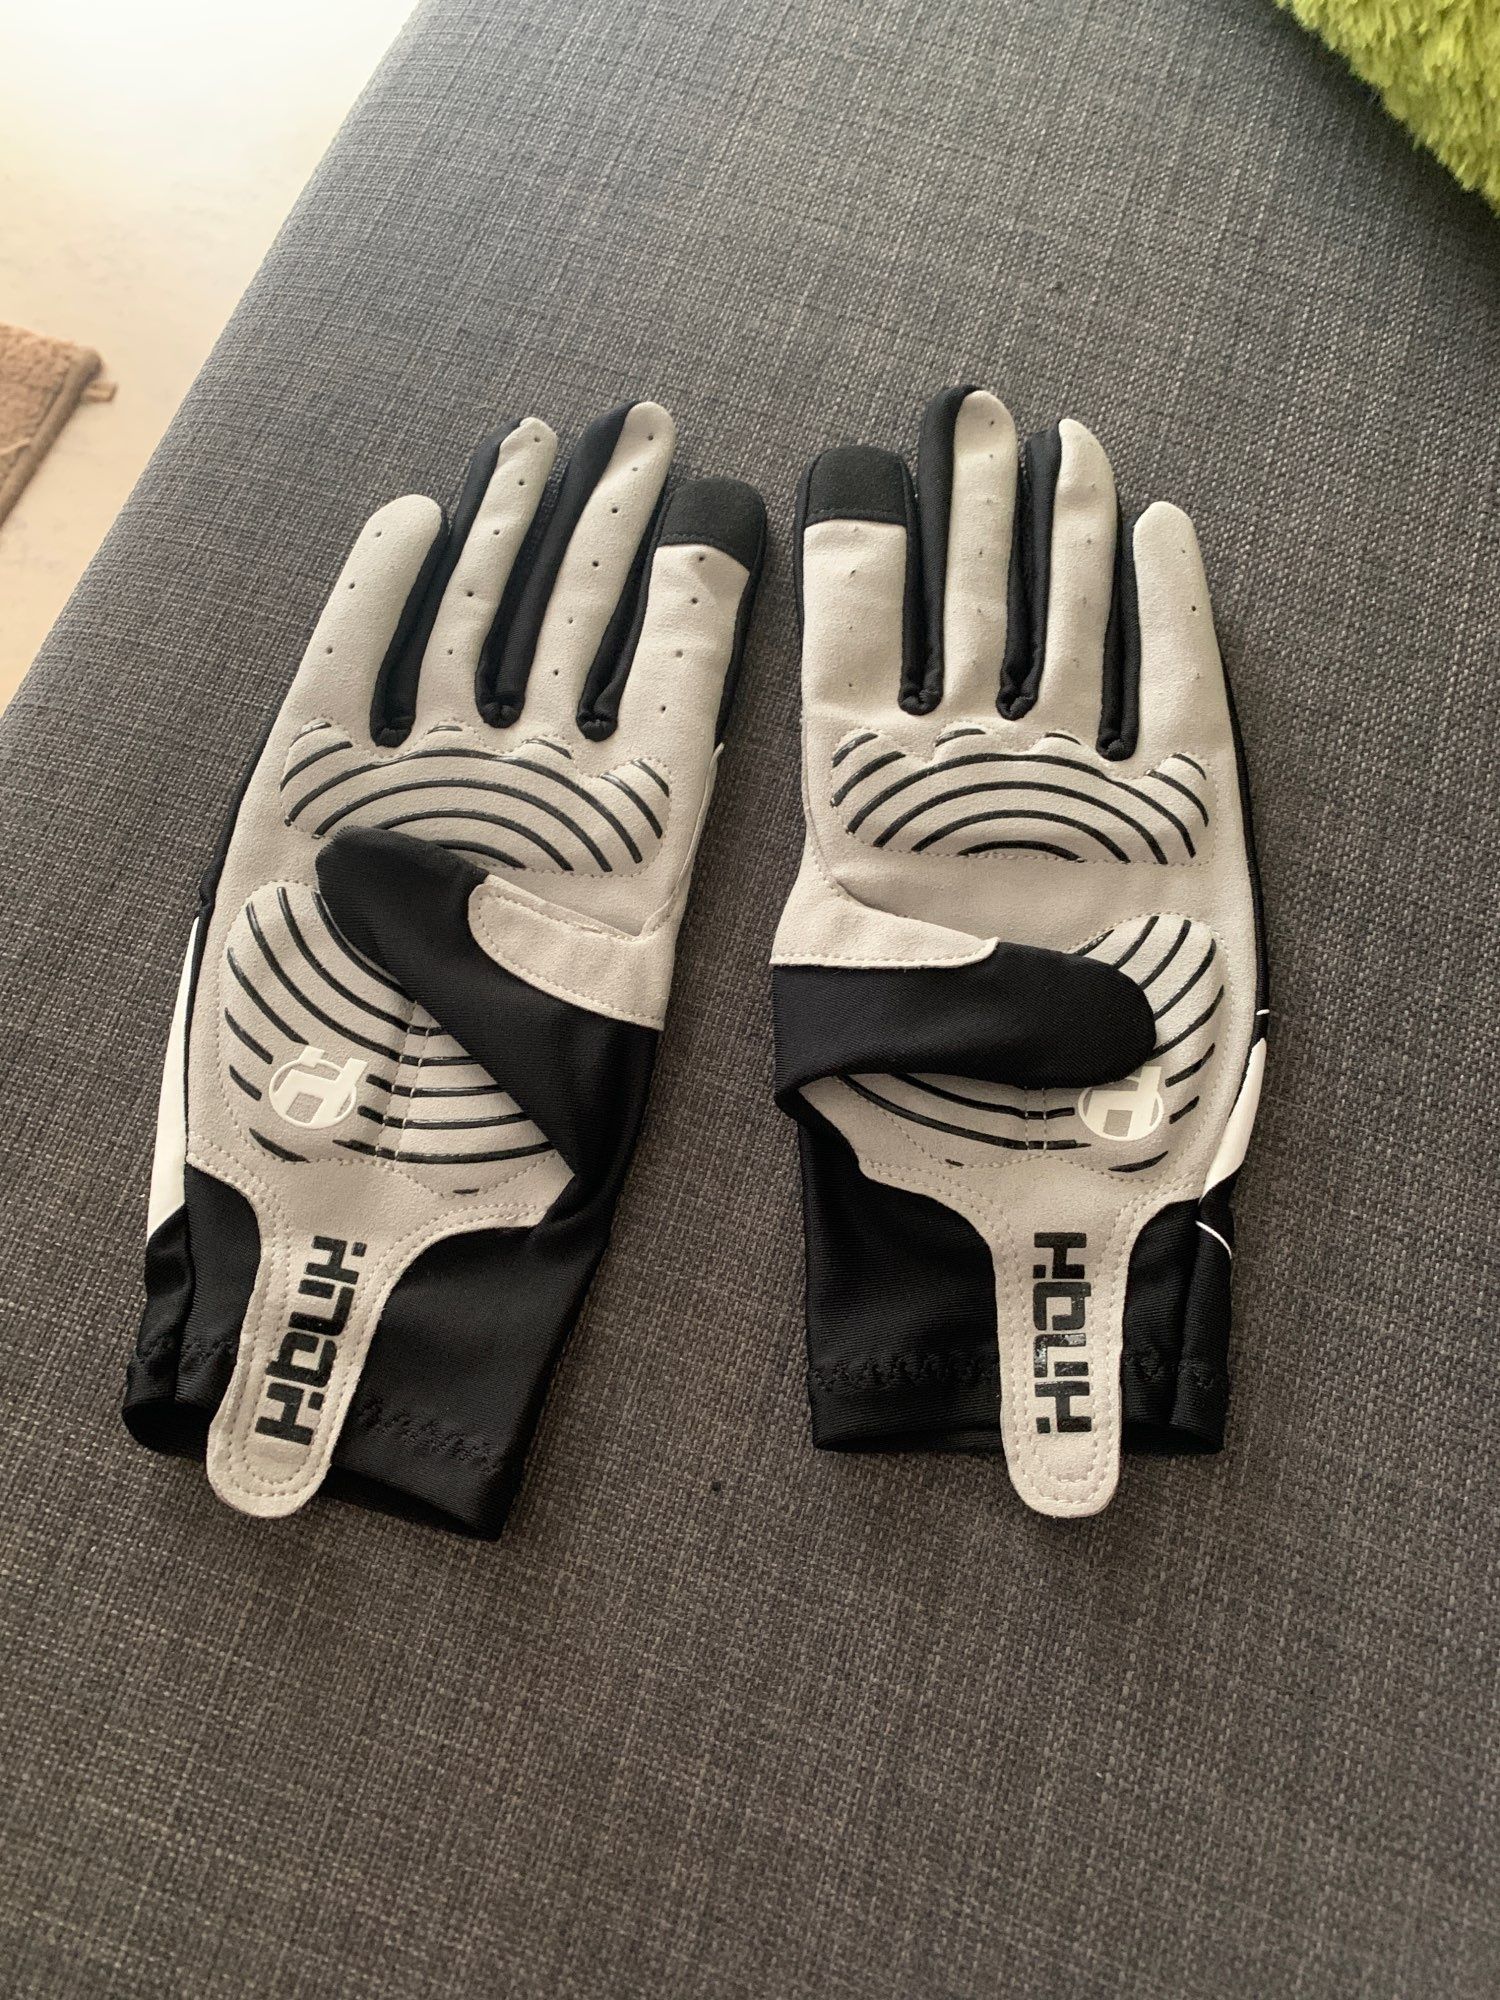 Nowe rękawice żelowe podszyte skórą rozmiar XL.